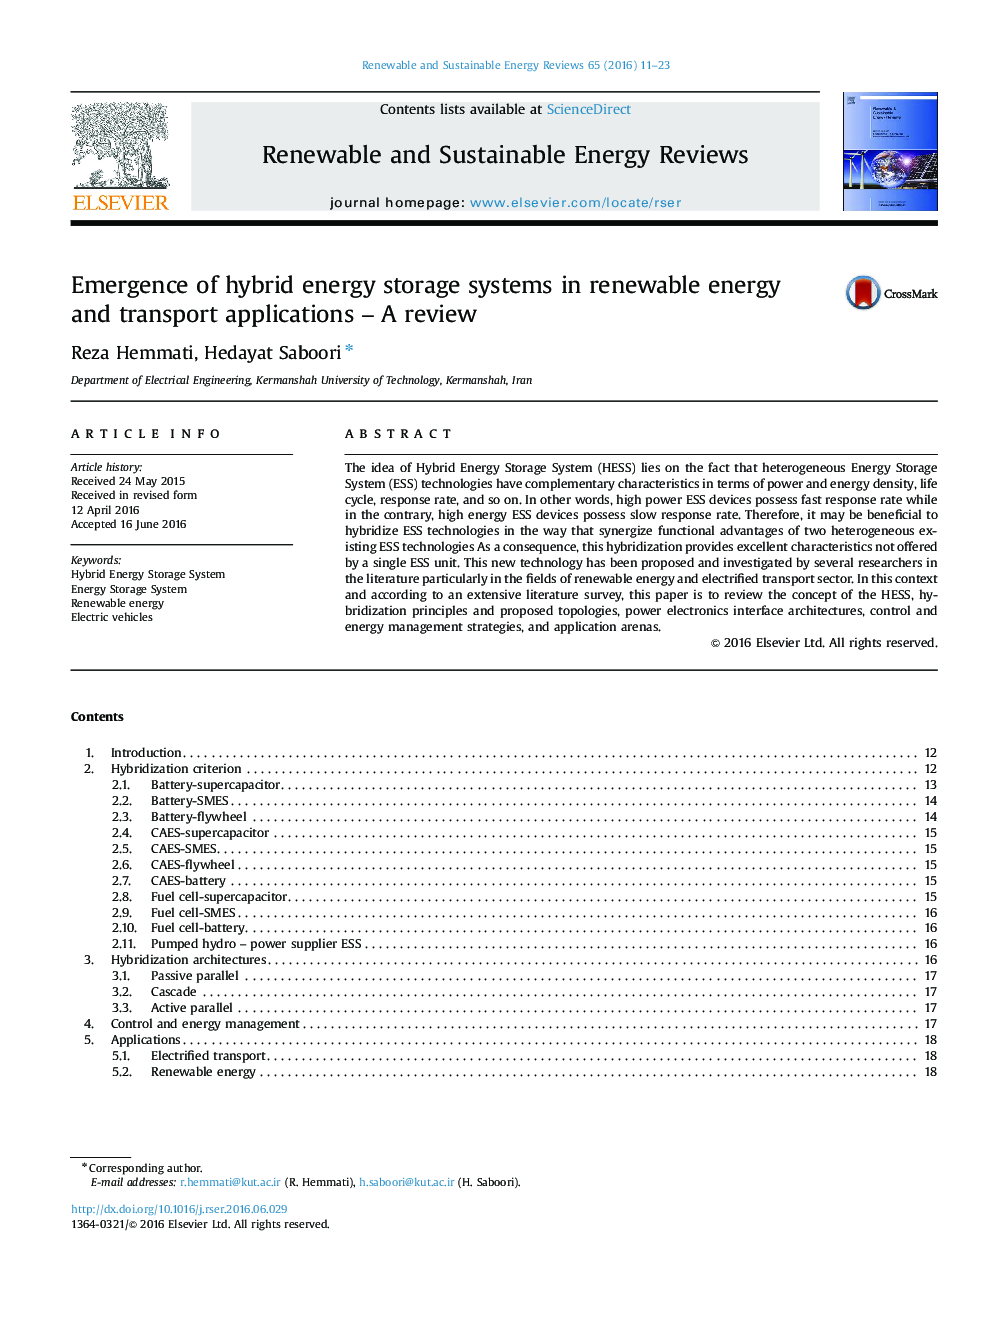 ظهور سیستم های ذخیره سازی انرژی ترکیبی در برنامه های انرژی تجدید پذیر و حمل و نقل - بررسی 